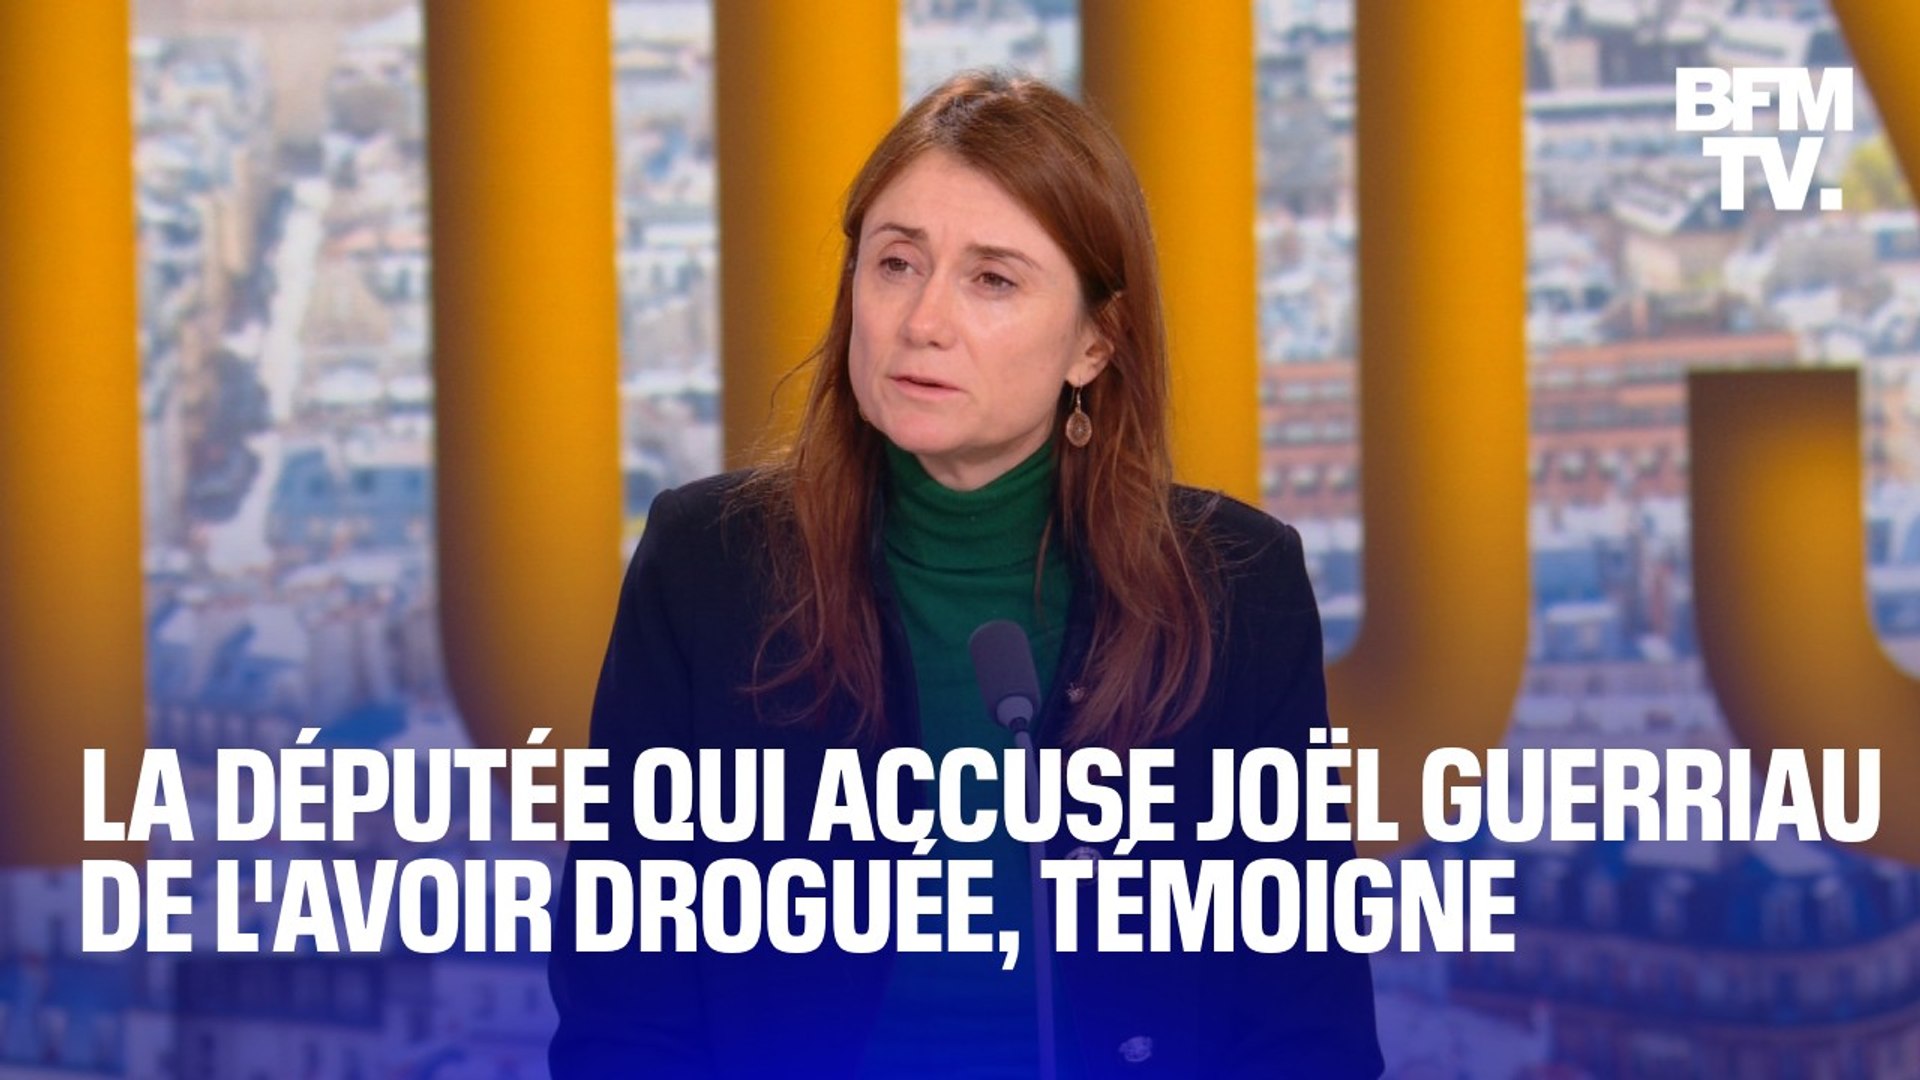 La députée Sandrine Josso, qui accuse le sénateur Joël Guerriau de l'avoir  droguée, témoigne sur BFMTV - Vidéo Dailymotion